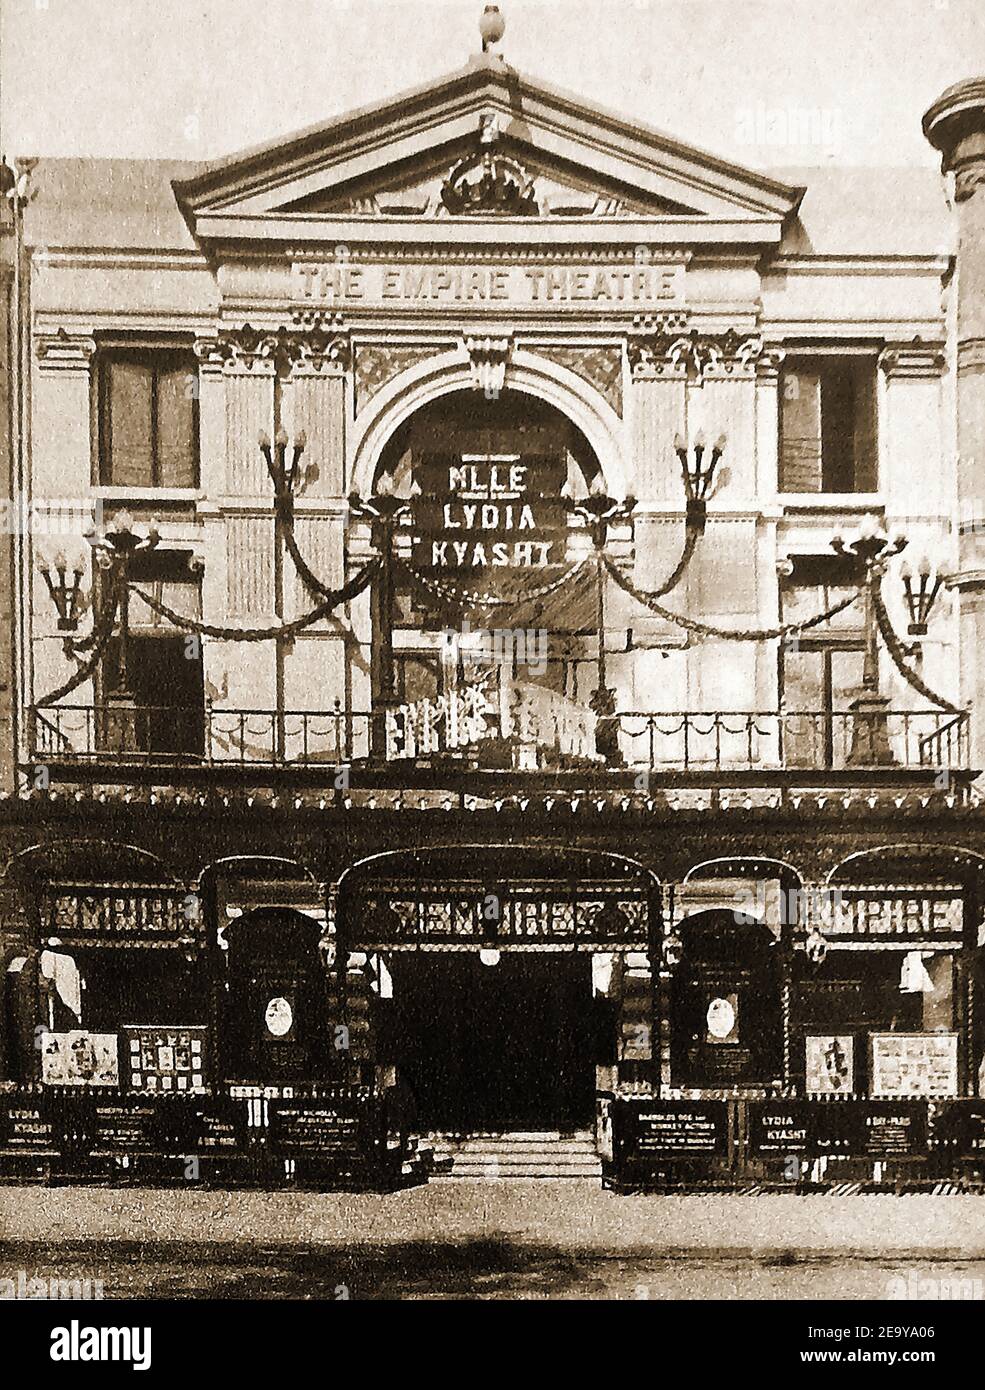 L'ancien Empire Theatre, Edmonton, Londres, Angleterre, juste après son ouverture au public le 26 décembre 1908, en tant que théâtre de 1,300 places et cinéma à temps partiel par Mae Rose Bawn le « My Fancy » ou la « Reine des danseurs de sable ». Le concepteur était Bertie Crewe. C'est sur cette scène que Marie Lloyd s'est effondrée sur scène (1922) et est mort quelques jours plus tard, la née américaine Ballerina Lydia Kyasht (alias Kiaksht, Kyaksht) était la première facturation au théâtre lorsque la photographie a été prise. Elle succède à Adeline Genée comme prima ballerina à l'Empire Theatre jusqu'en 1913. Banque D'Images